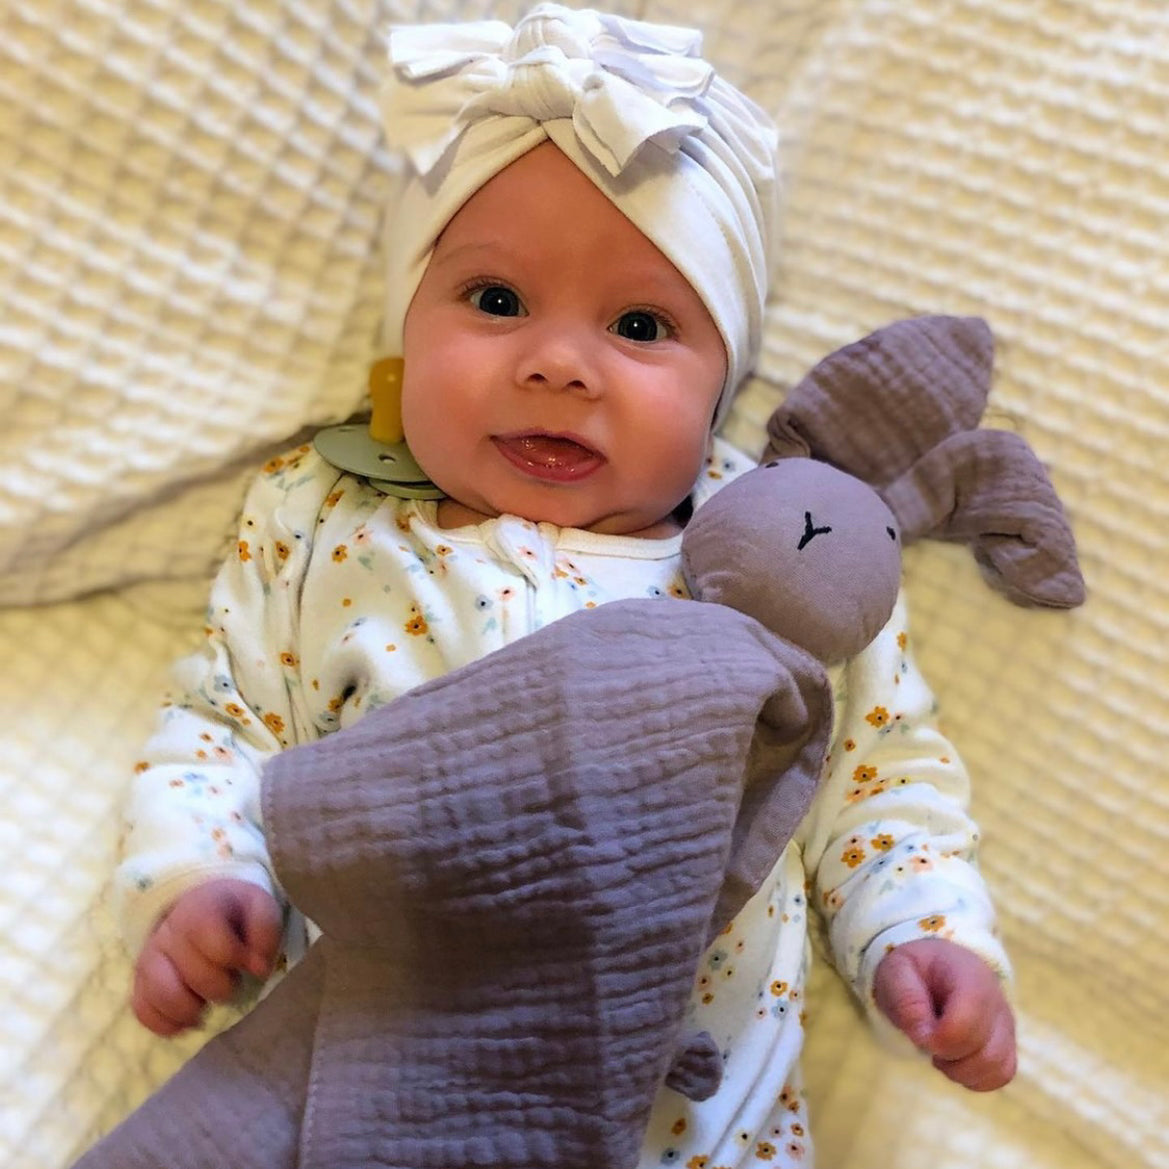 Sommerfugl Kids 100% Cotton Benni Bunny Baby Comforter Blanket Soft ...